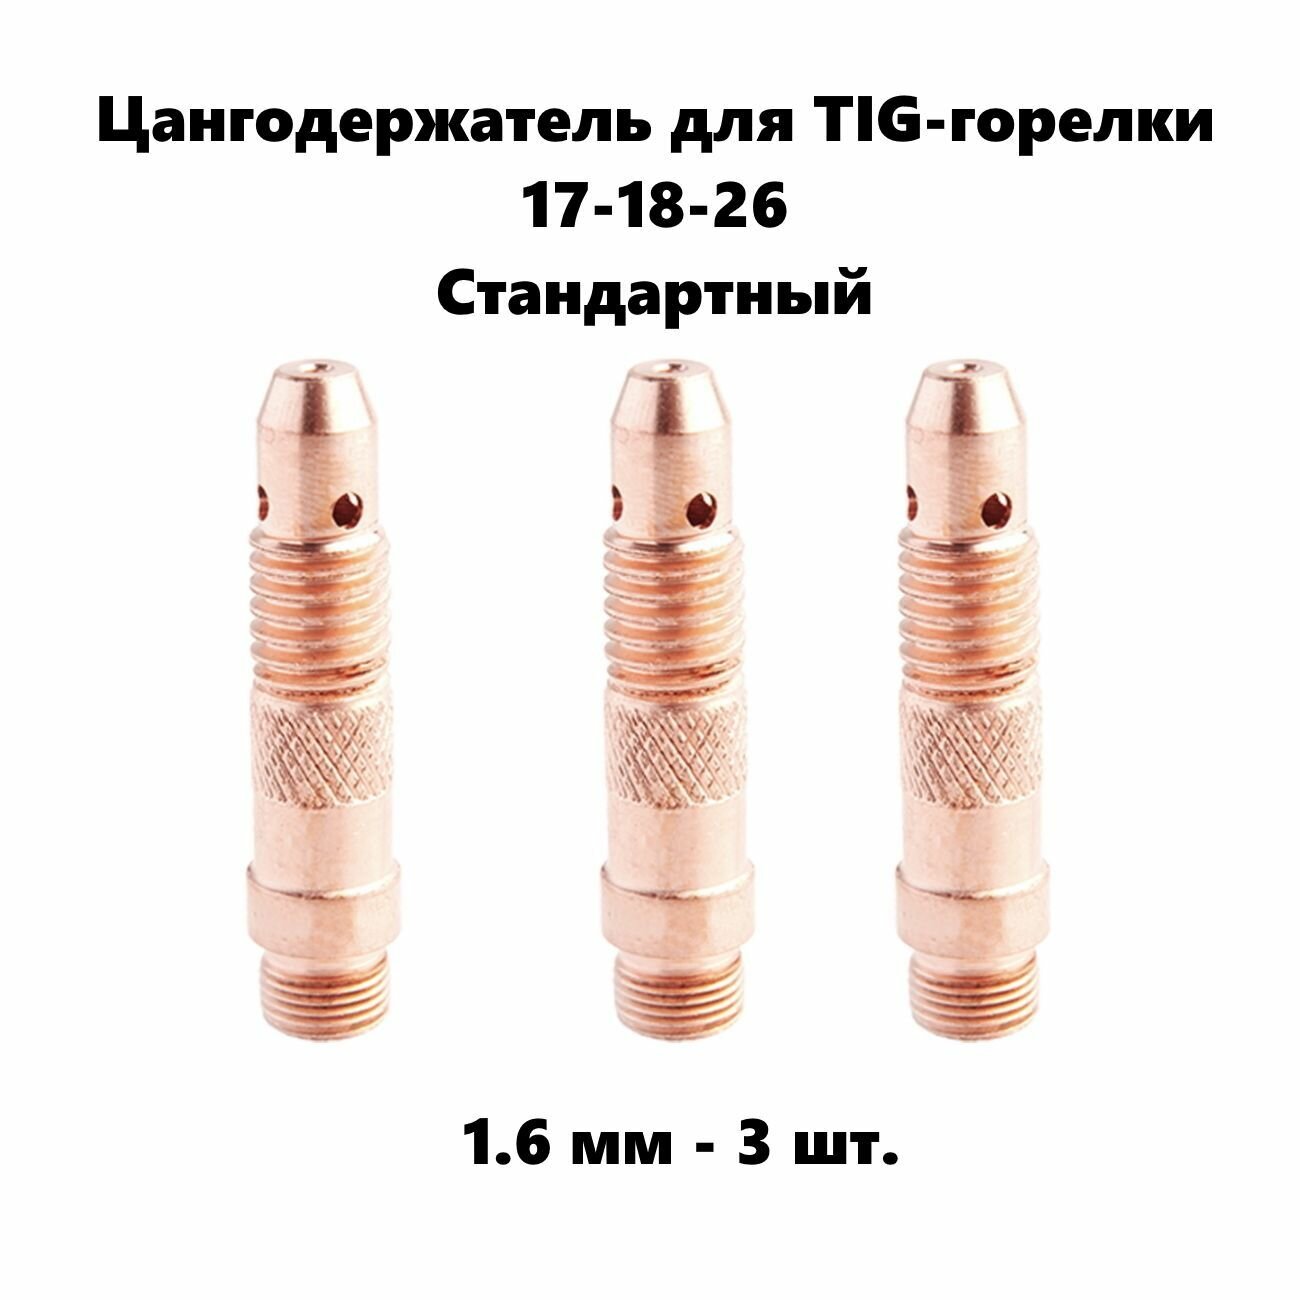 Цангодержатель 16 мм диаметр 3 шт. для Tig горелки 17-18-26 стандартный